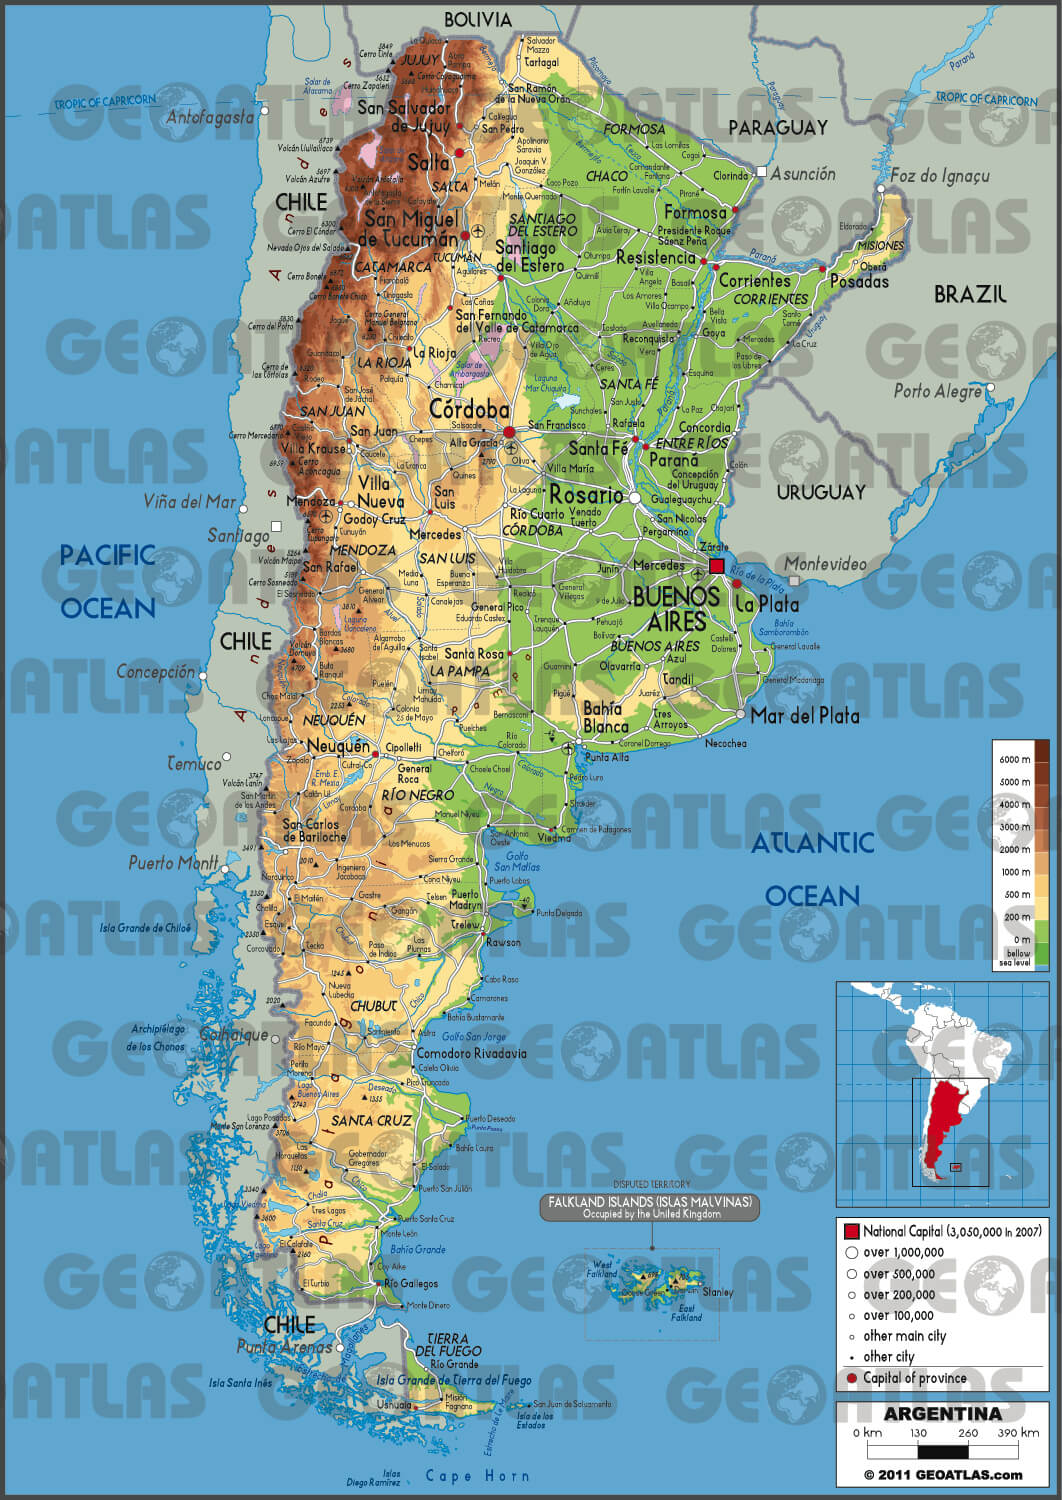 Regional Map of Argentina